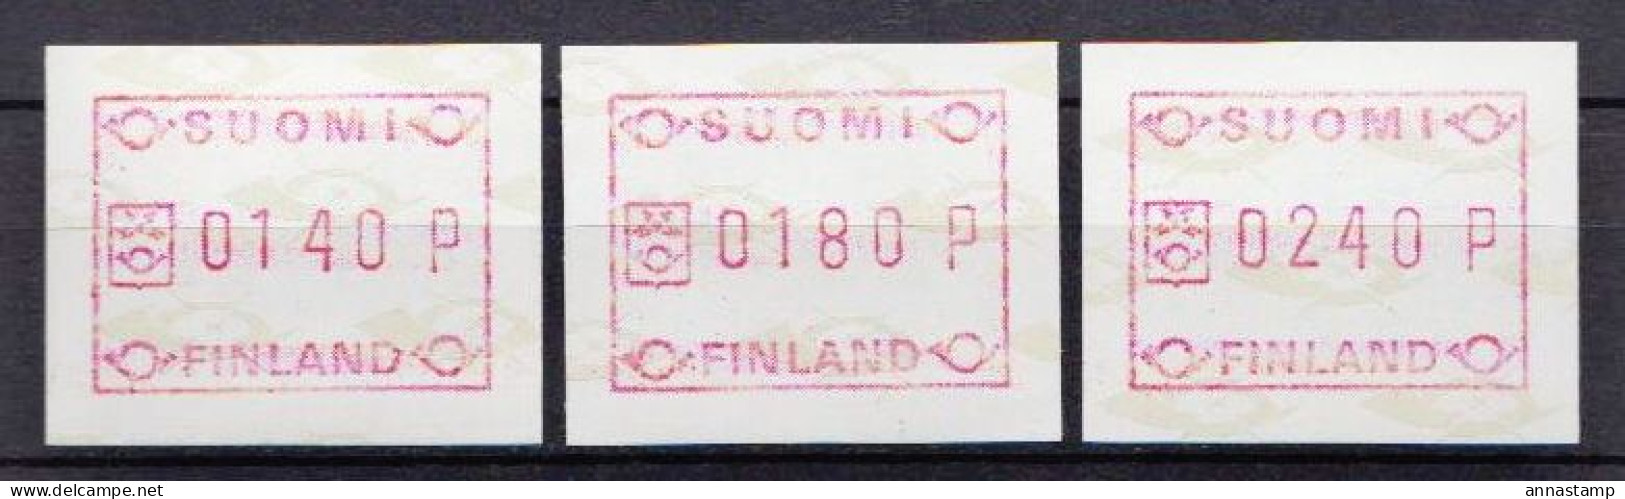 Finland MNH Stamps - Timbres De Distributeurs [ATM]